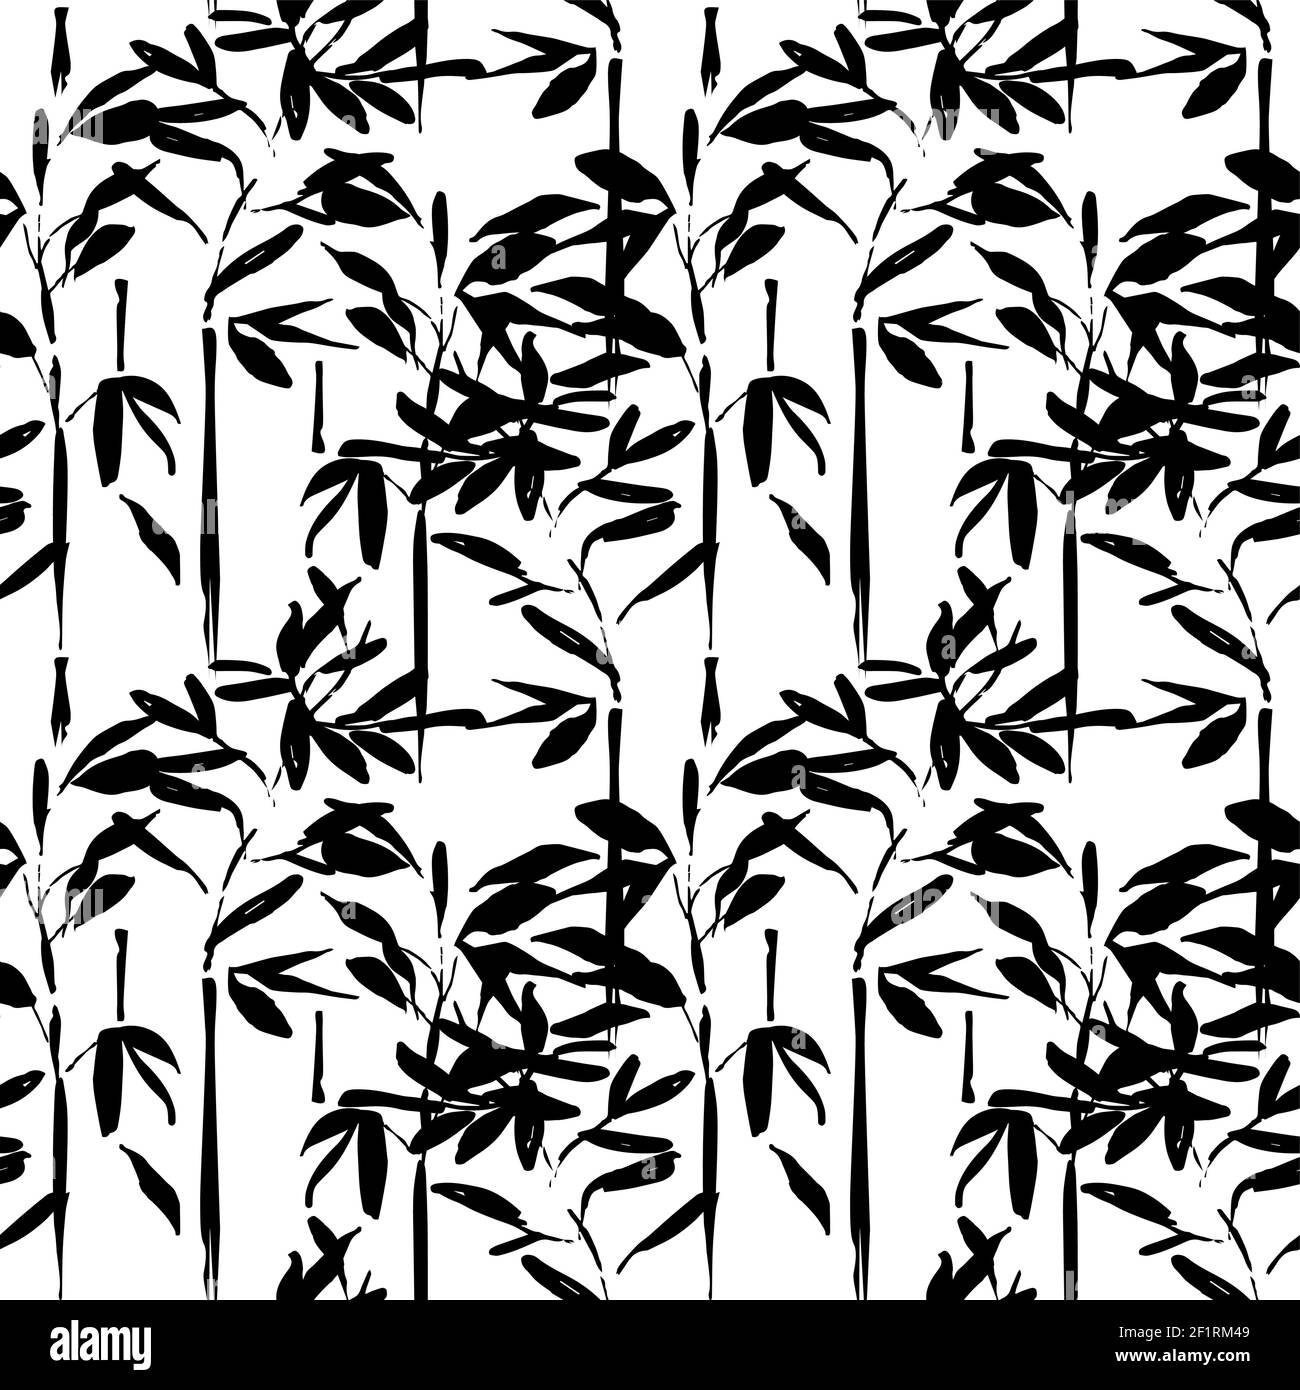 Asiatische Bambus Baum Blatt nahtlose Muster. Traditionelle handgezeichnete chinesische Kunst Hintergrund in schwarz und weiß. Stock Vektor